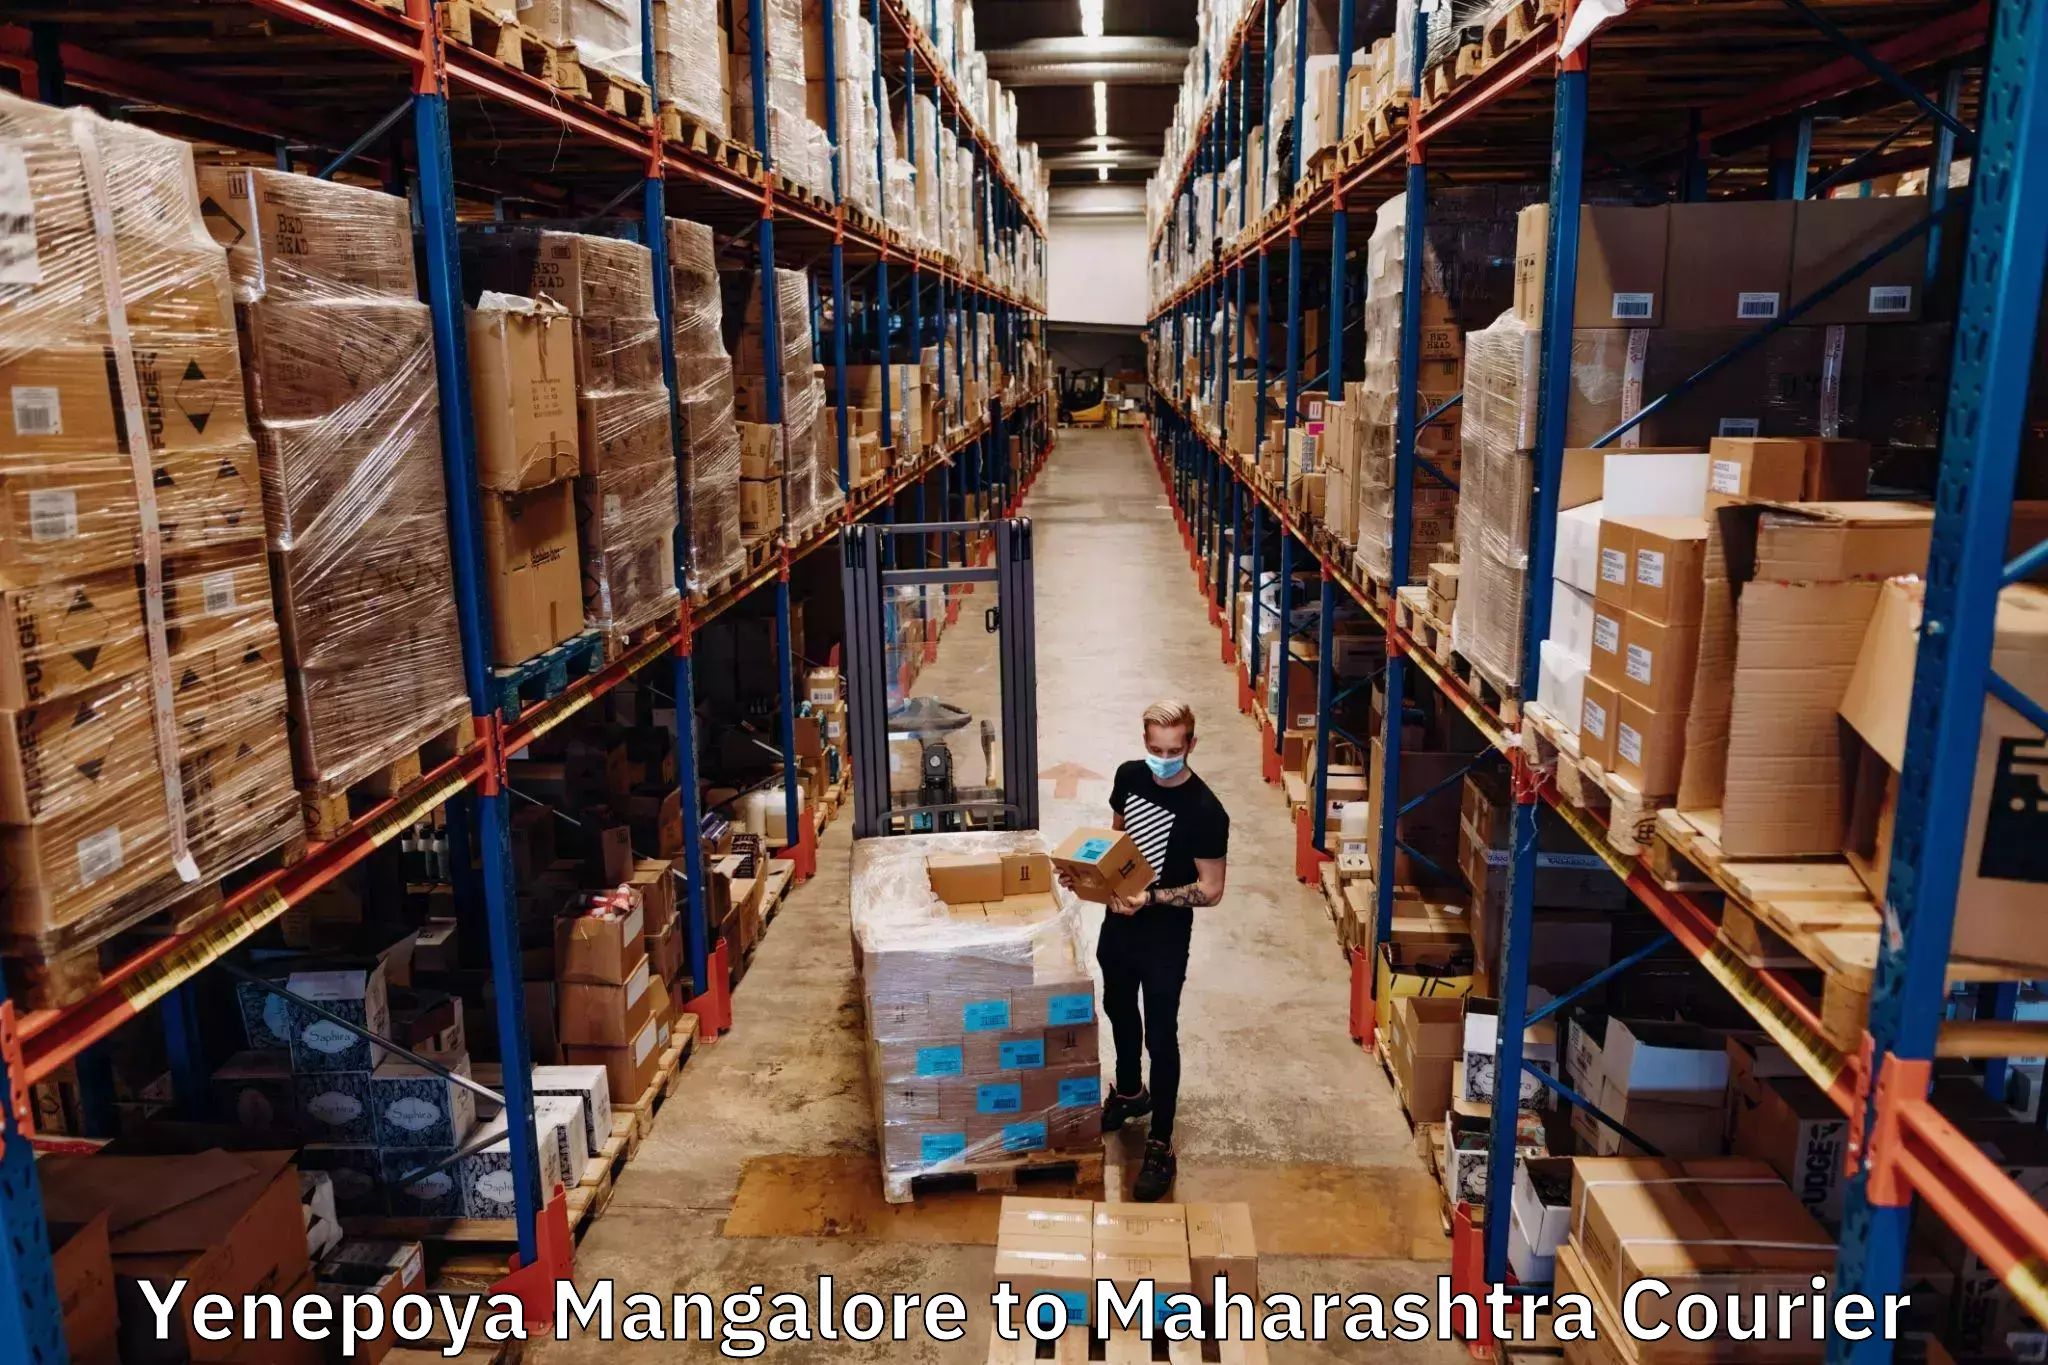 Global shipping networks Yenepoya Mangalore to Sangola